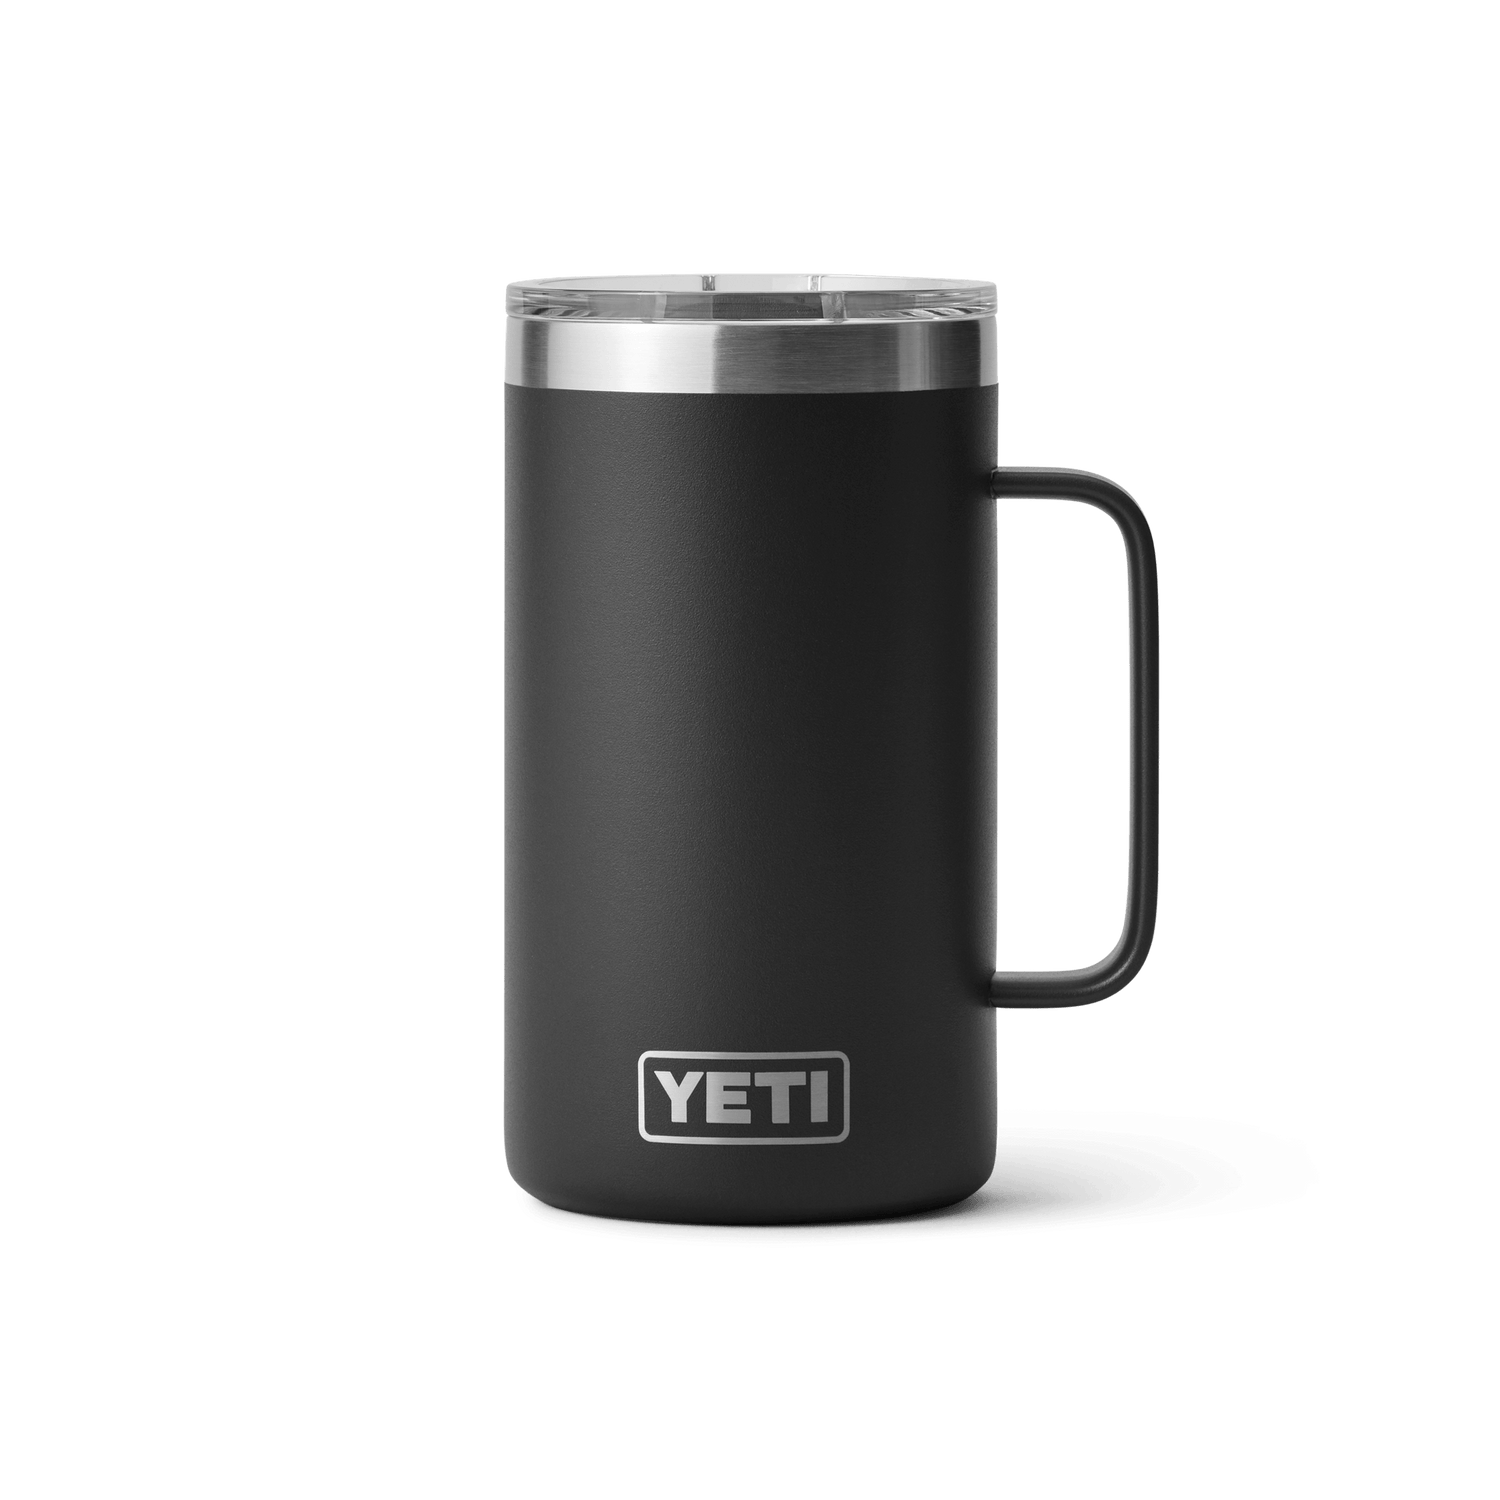 YETI Rambler Mugs: Insulated Stainless Steel – YETI EUROPE